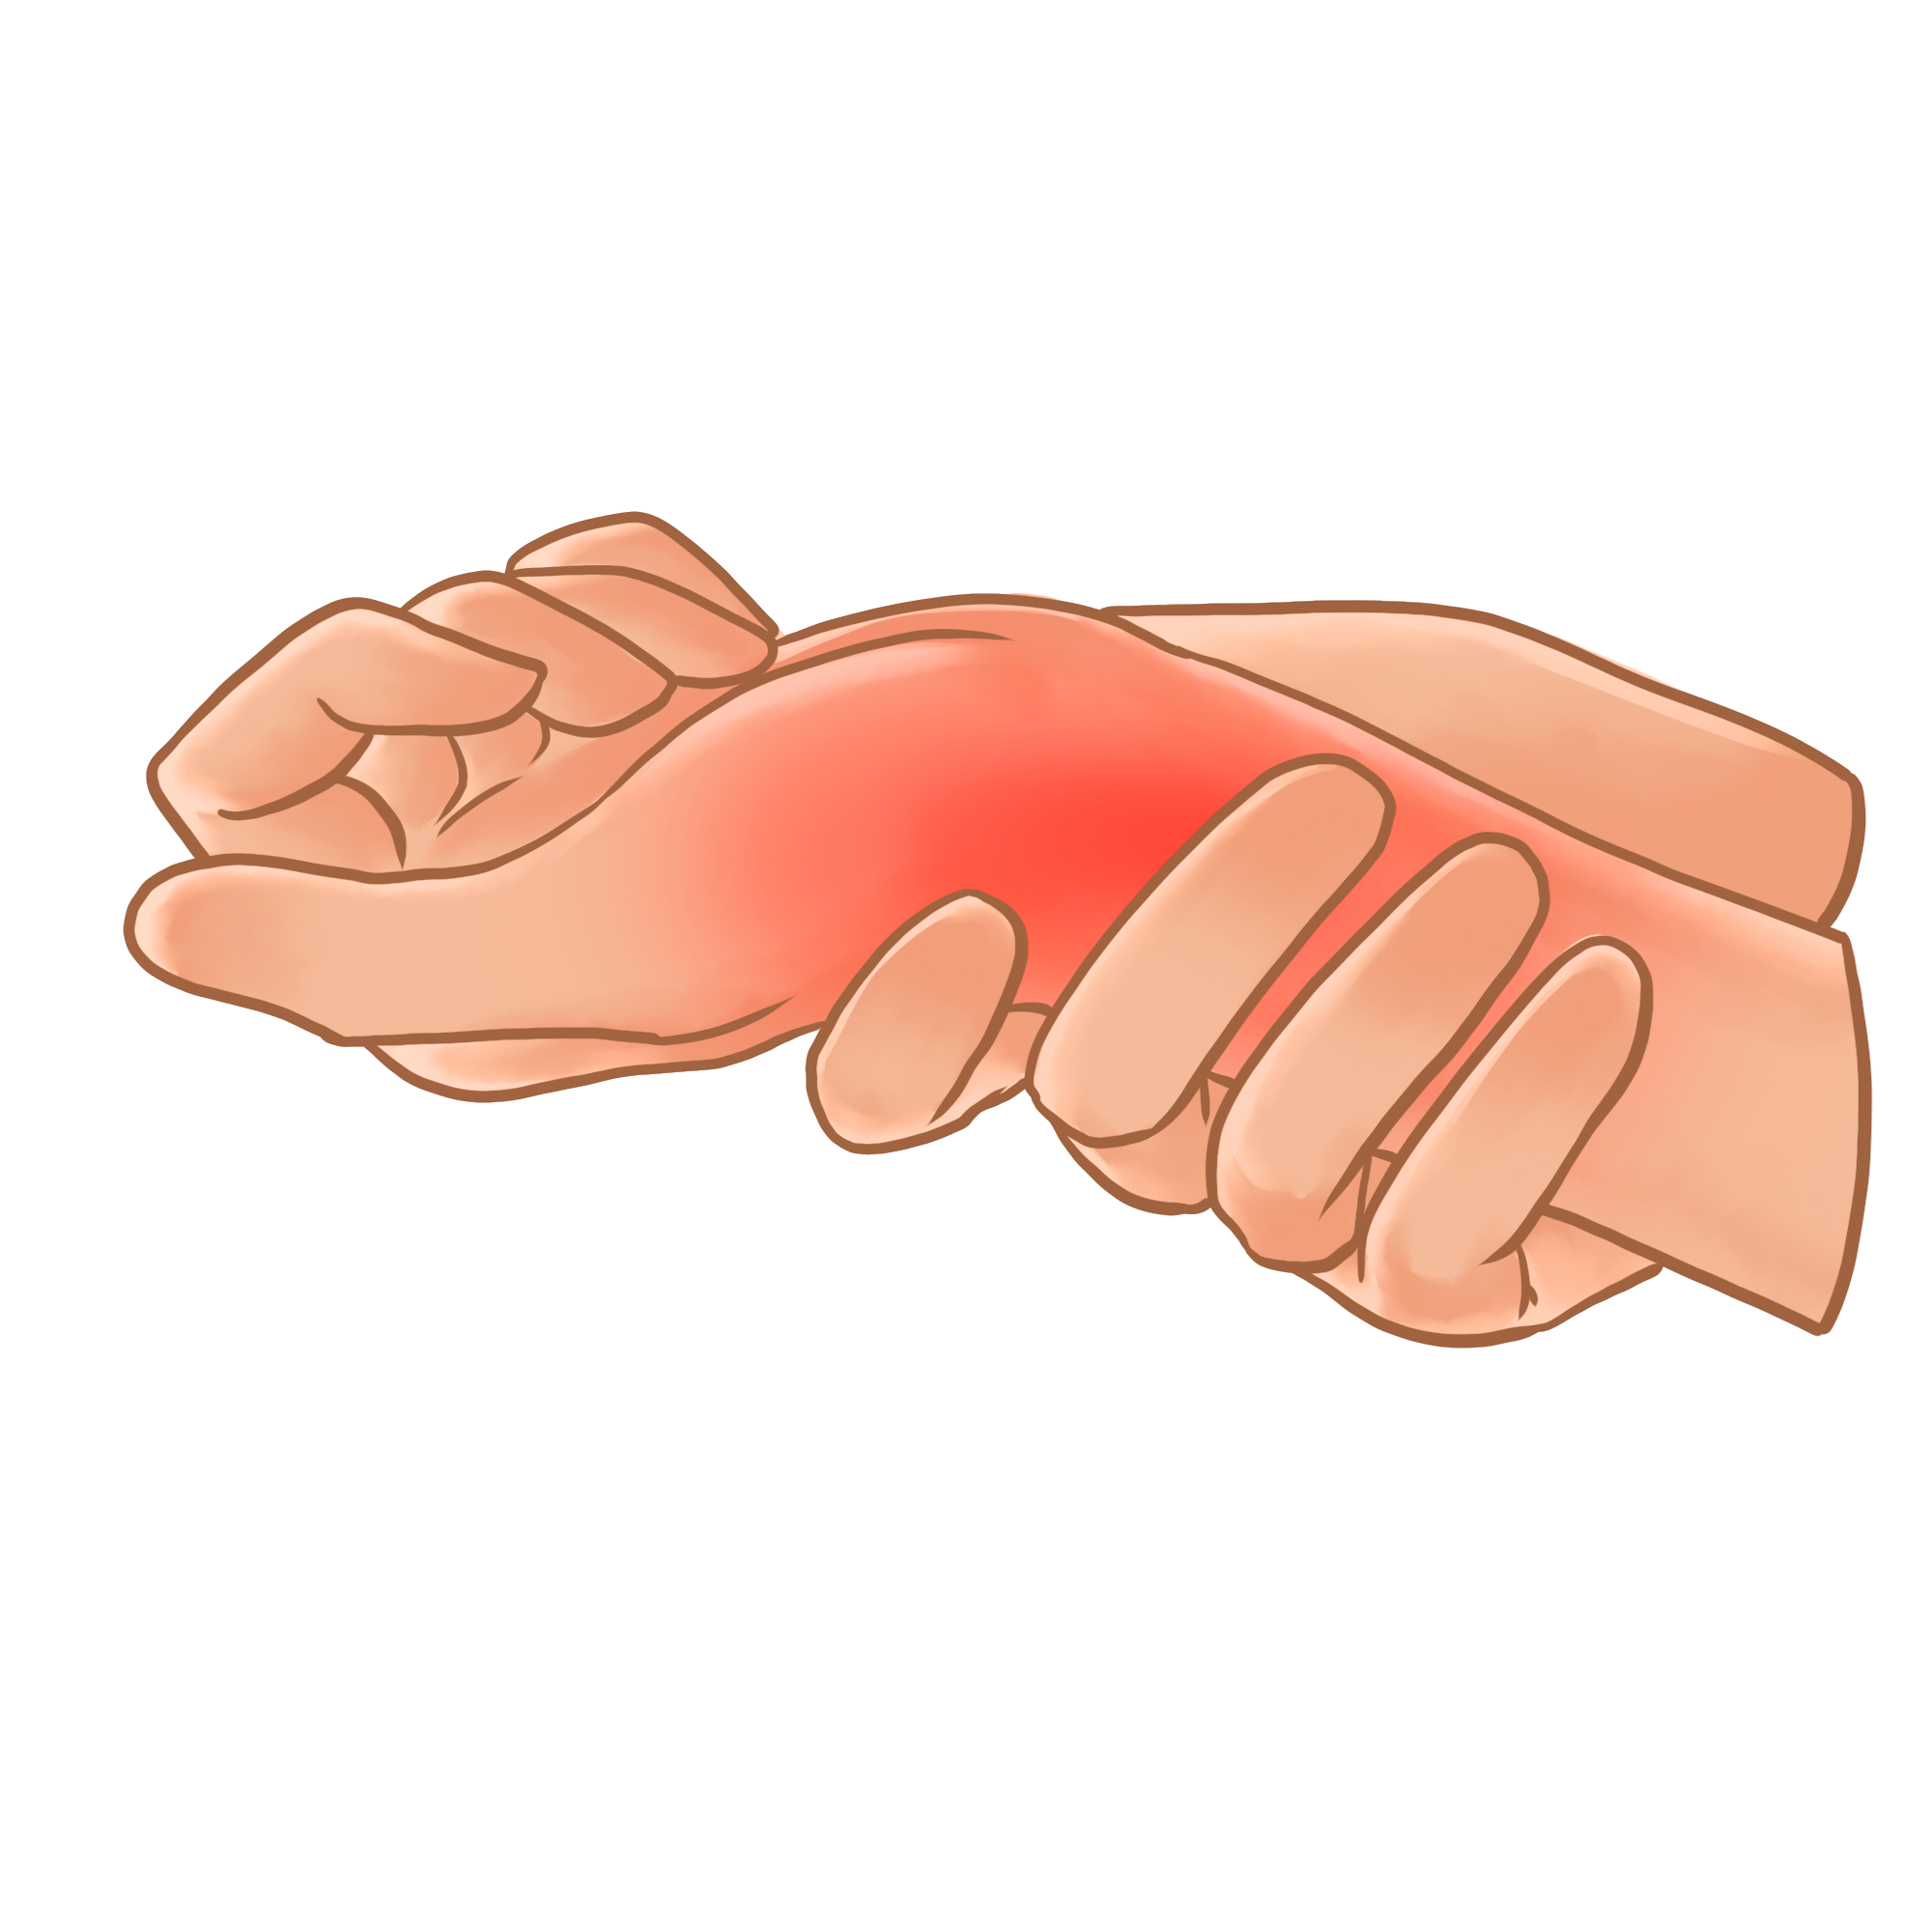 肌腱韧带固定系统注册技术审查指导原则